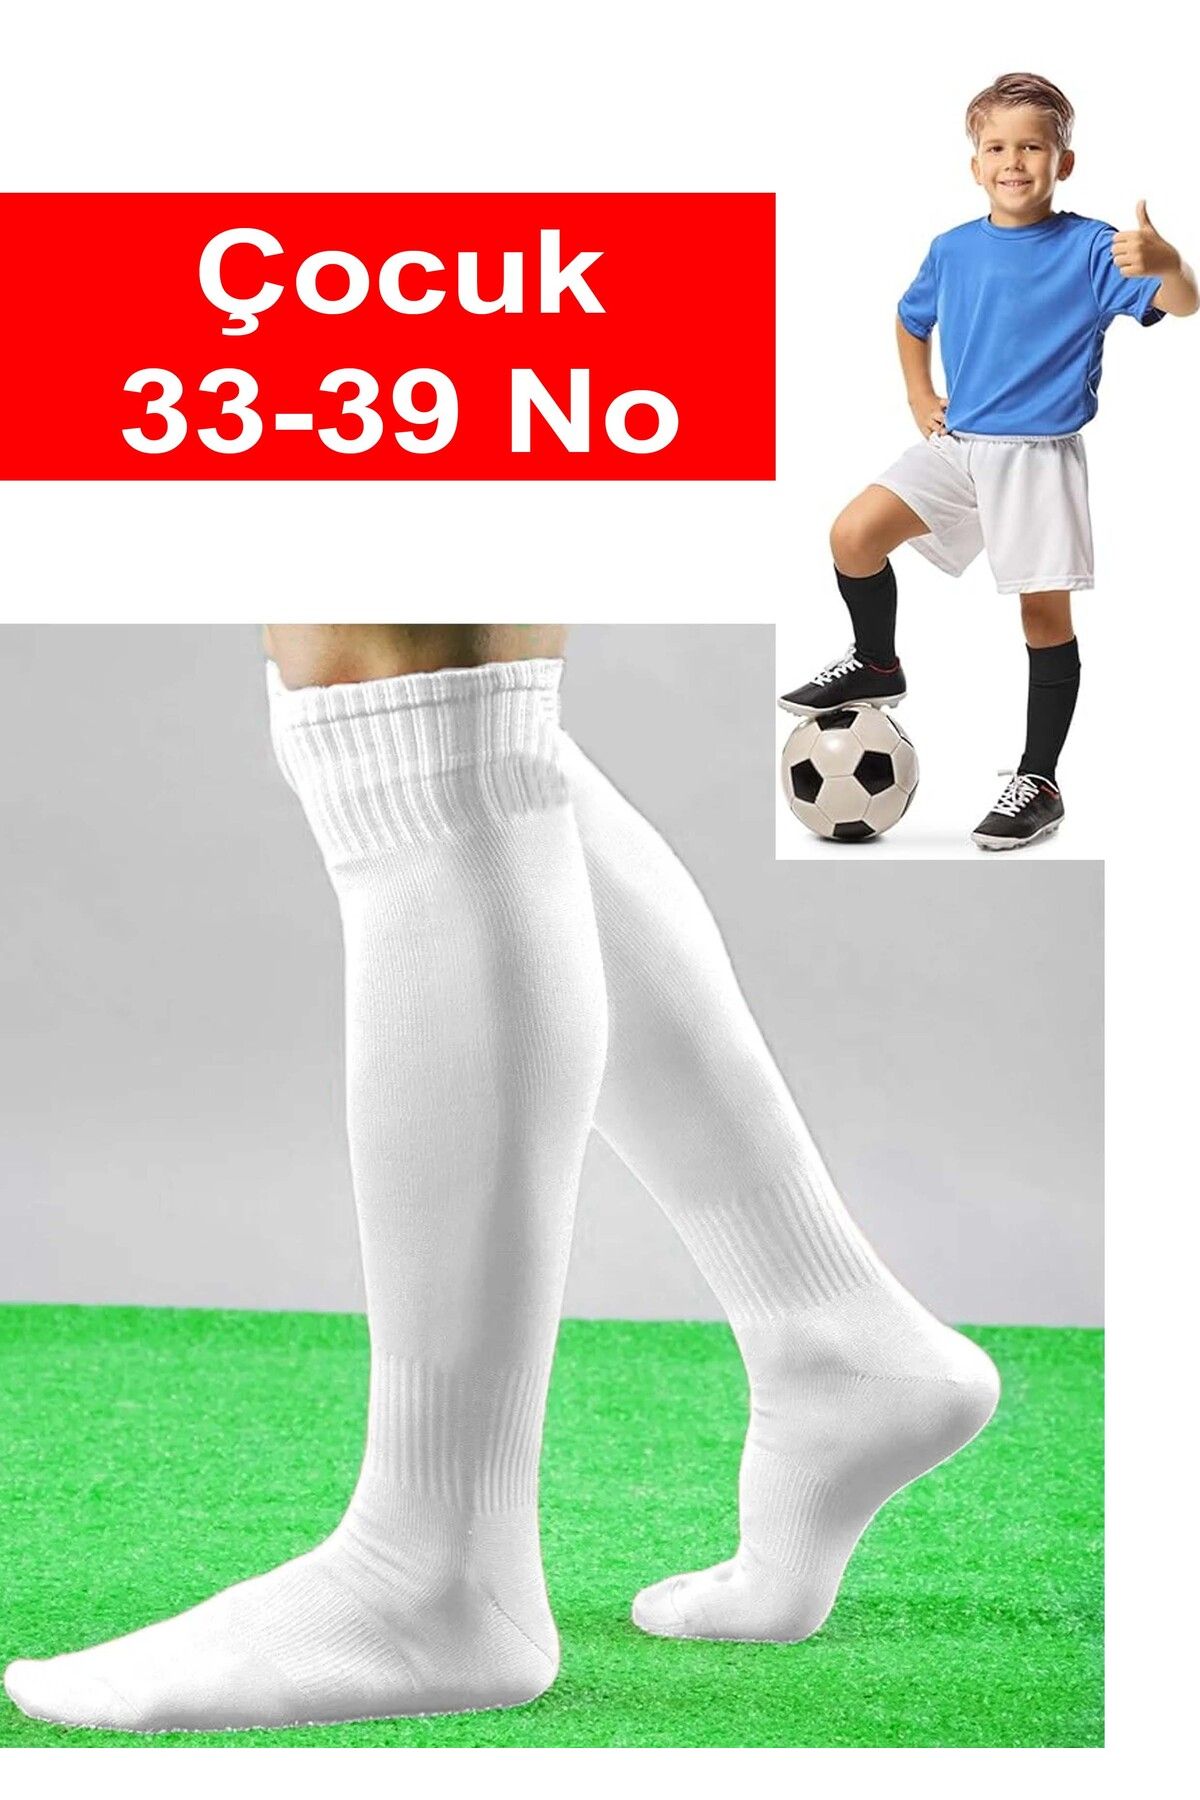 Liggo Çocuk Futbol Maç Çorabı Futbol Tozluk 33-39 Numara Futbol Halısaha Çorabı Konç